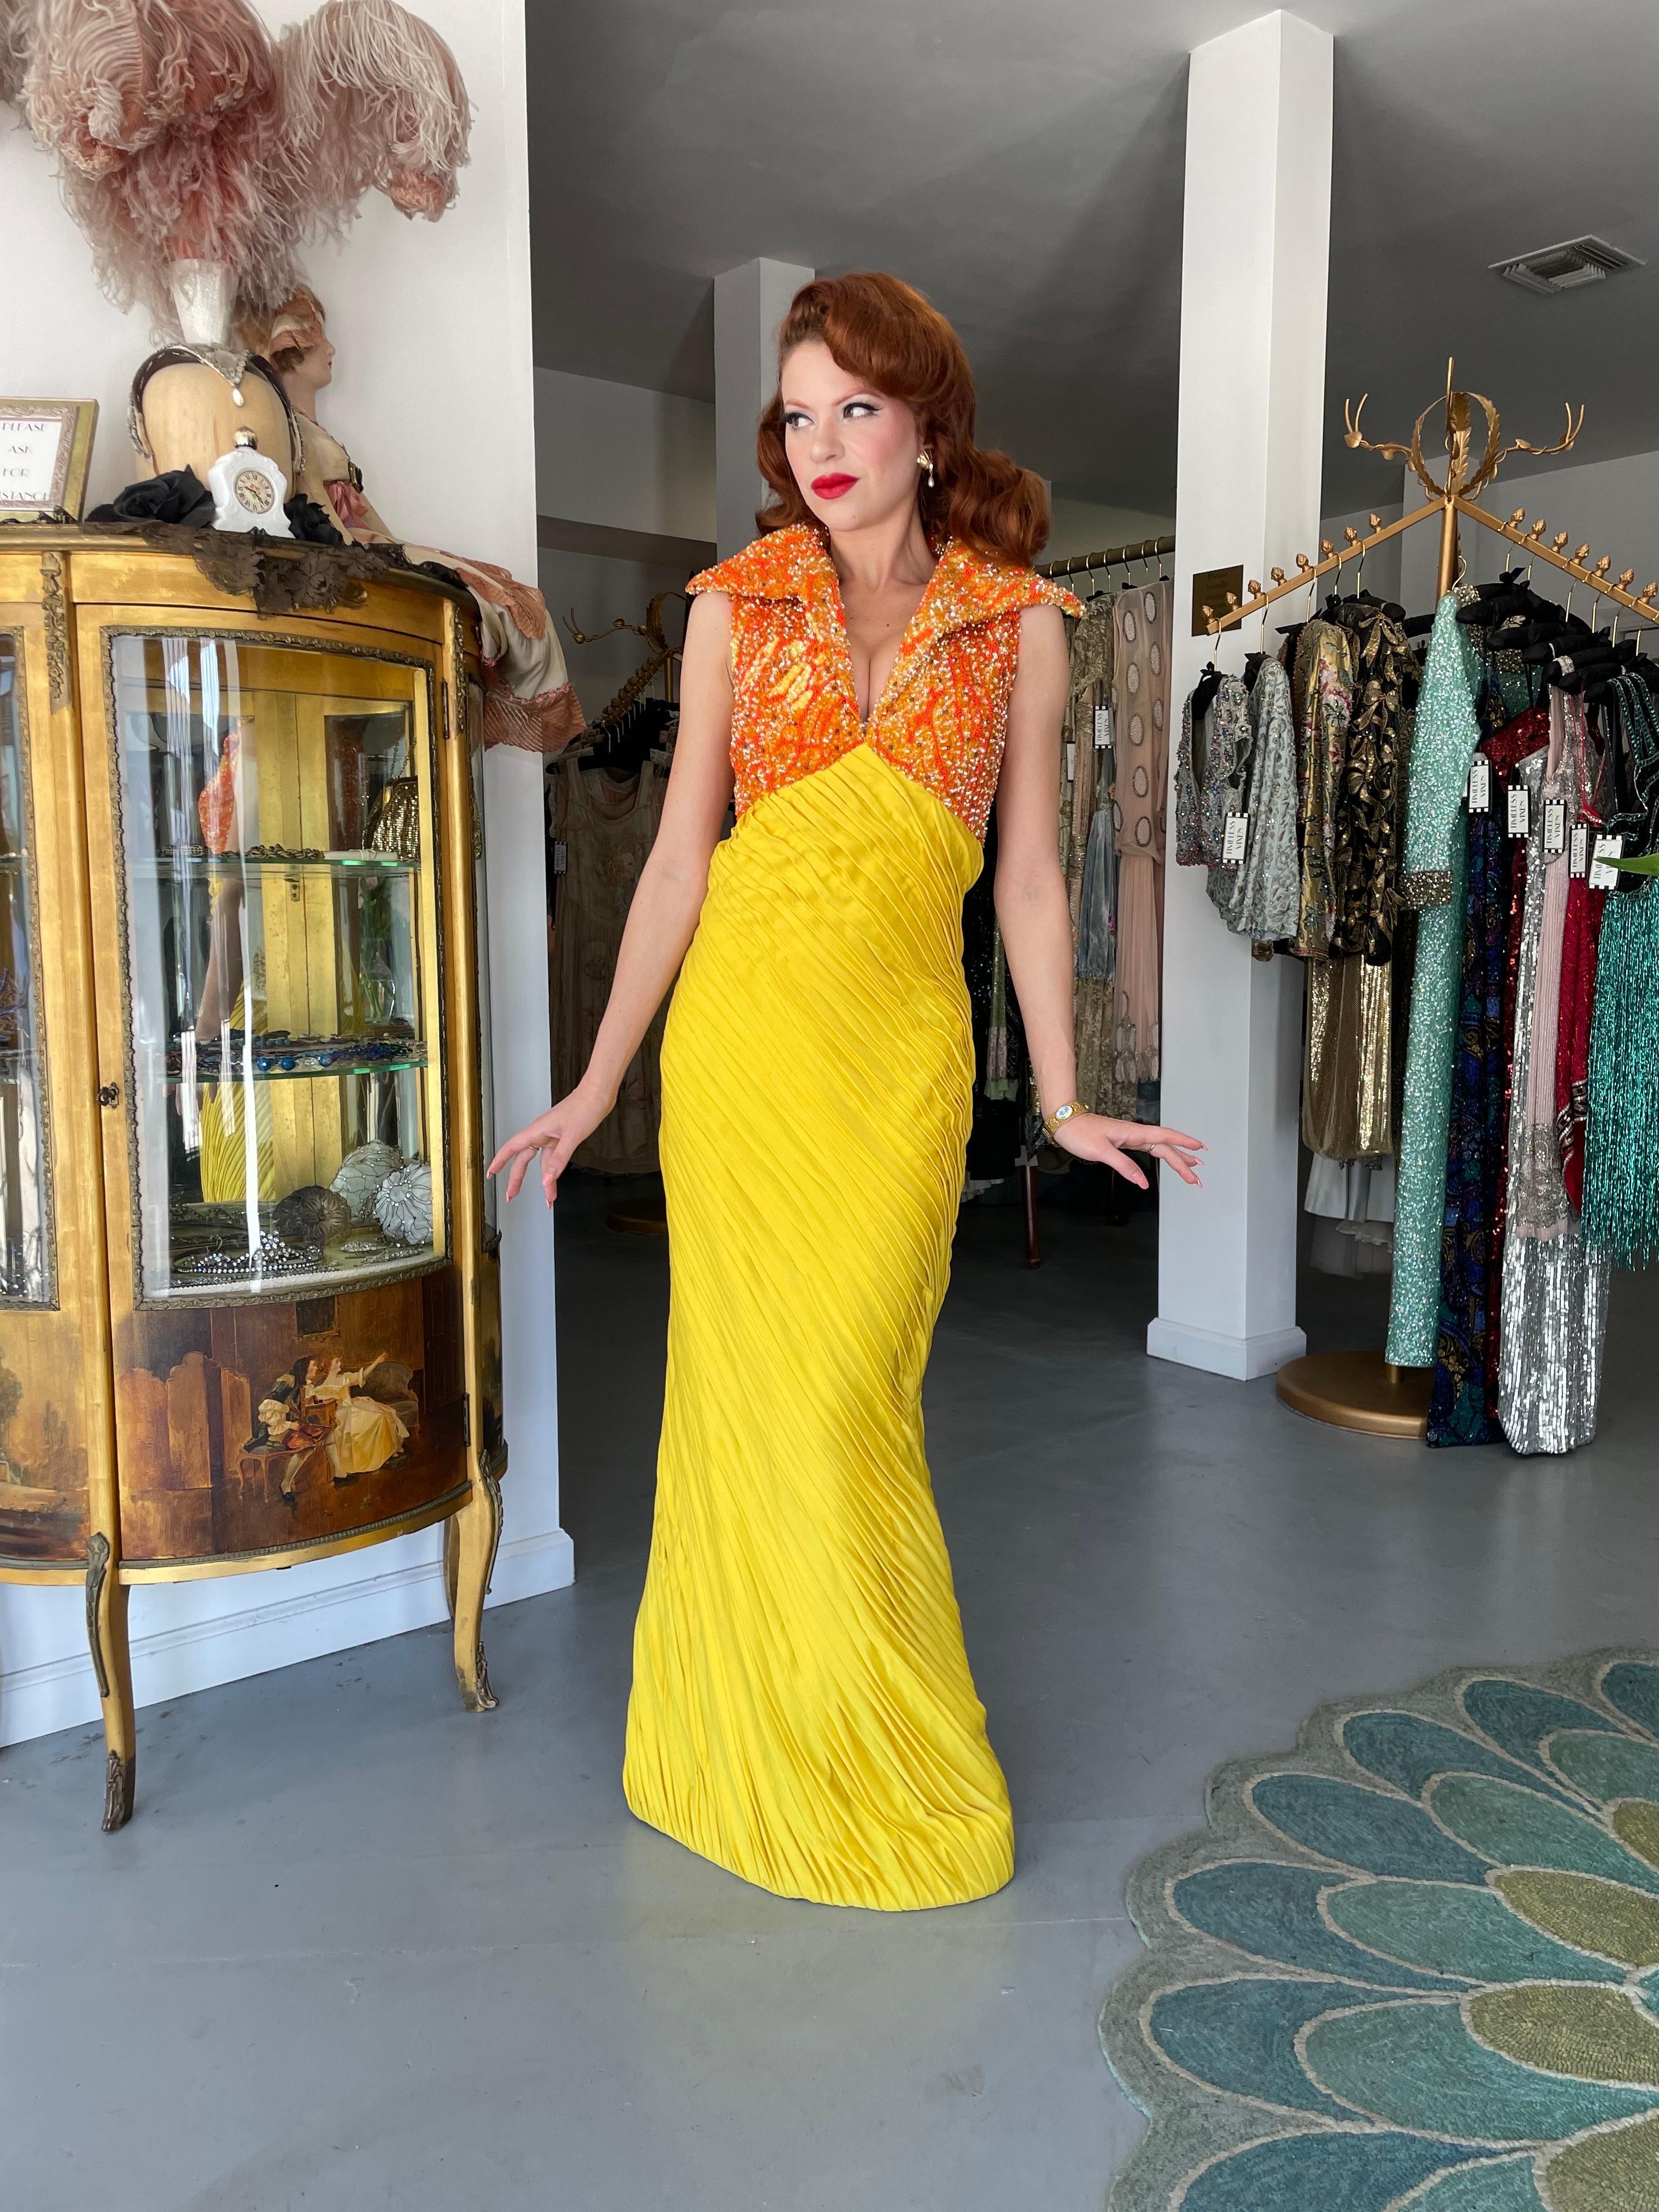 Eine absolut atemberaubende und ultra seltene La Mendola italienischen Couture vibrierenden gelben plissierten Seidenjersey Perlen Glamour Kleid aus ihrer 1968 Frühjahr / Sommer-Kollektion. Obwohl ihre Arbeit erst in jüngster Zeit gewürdigt wird,